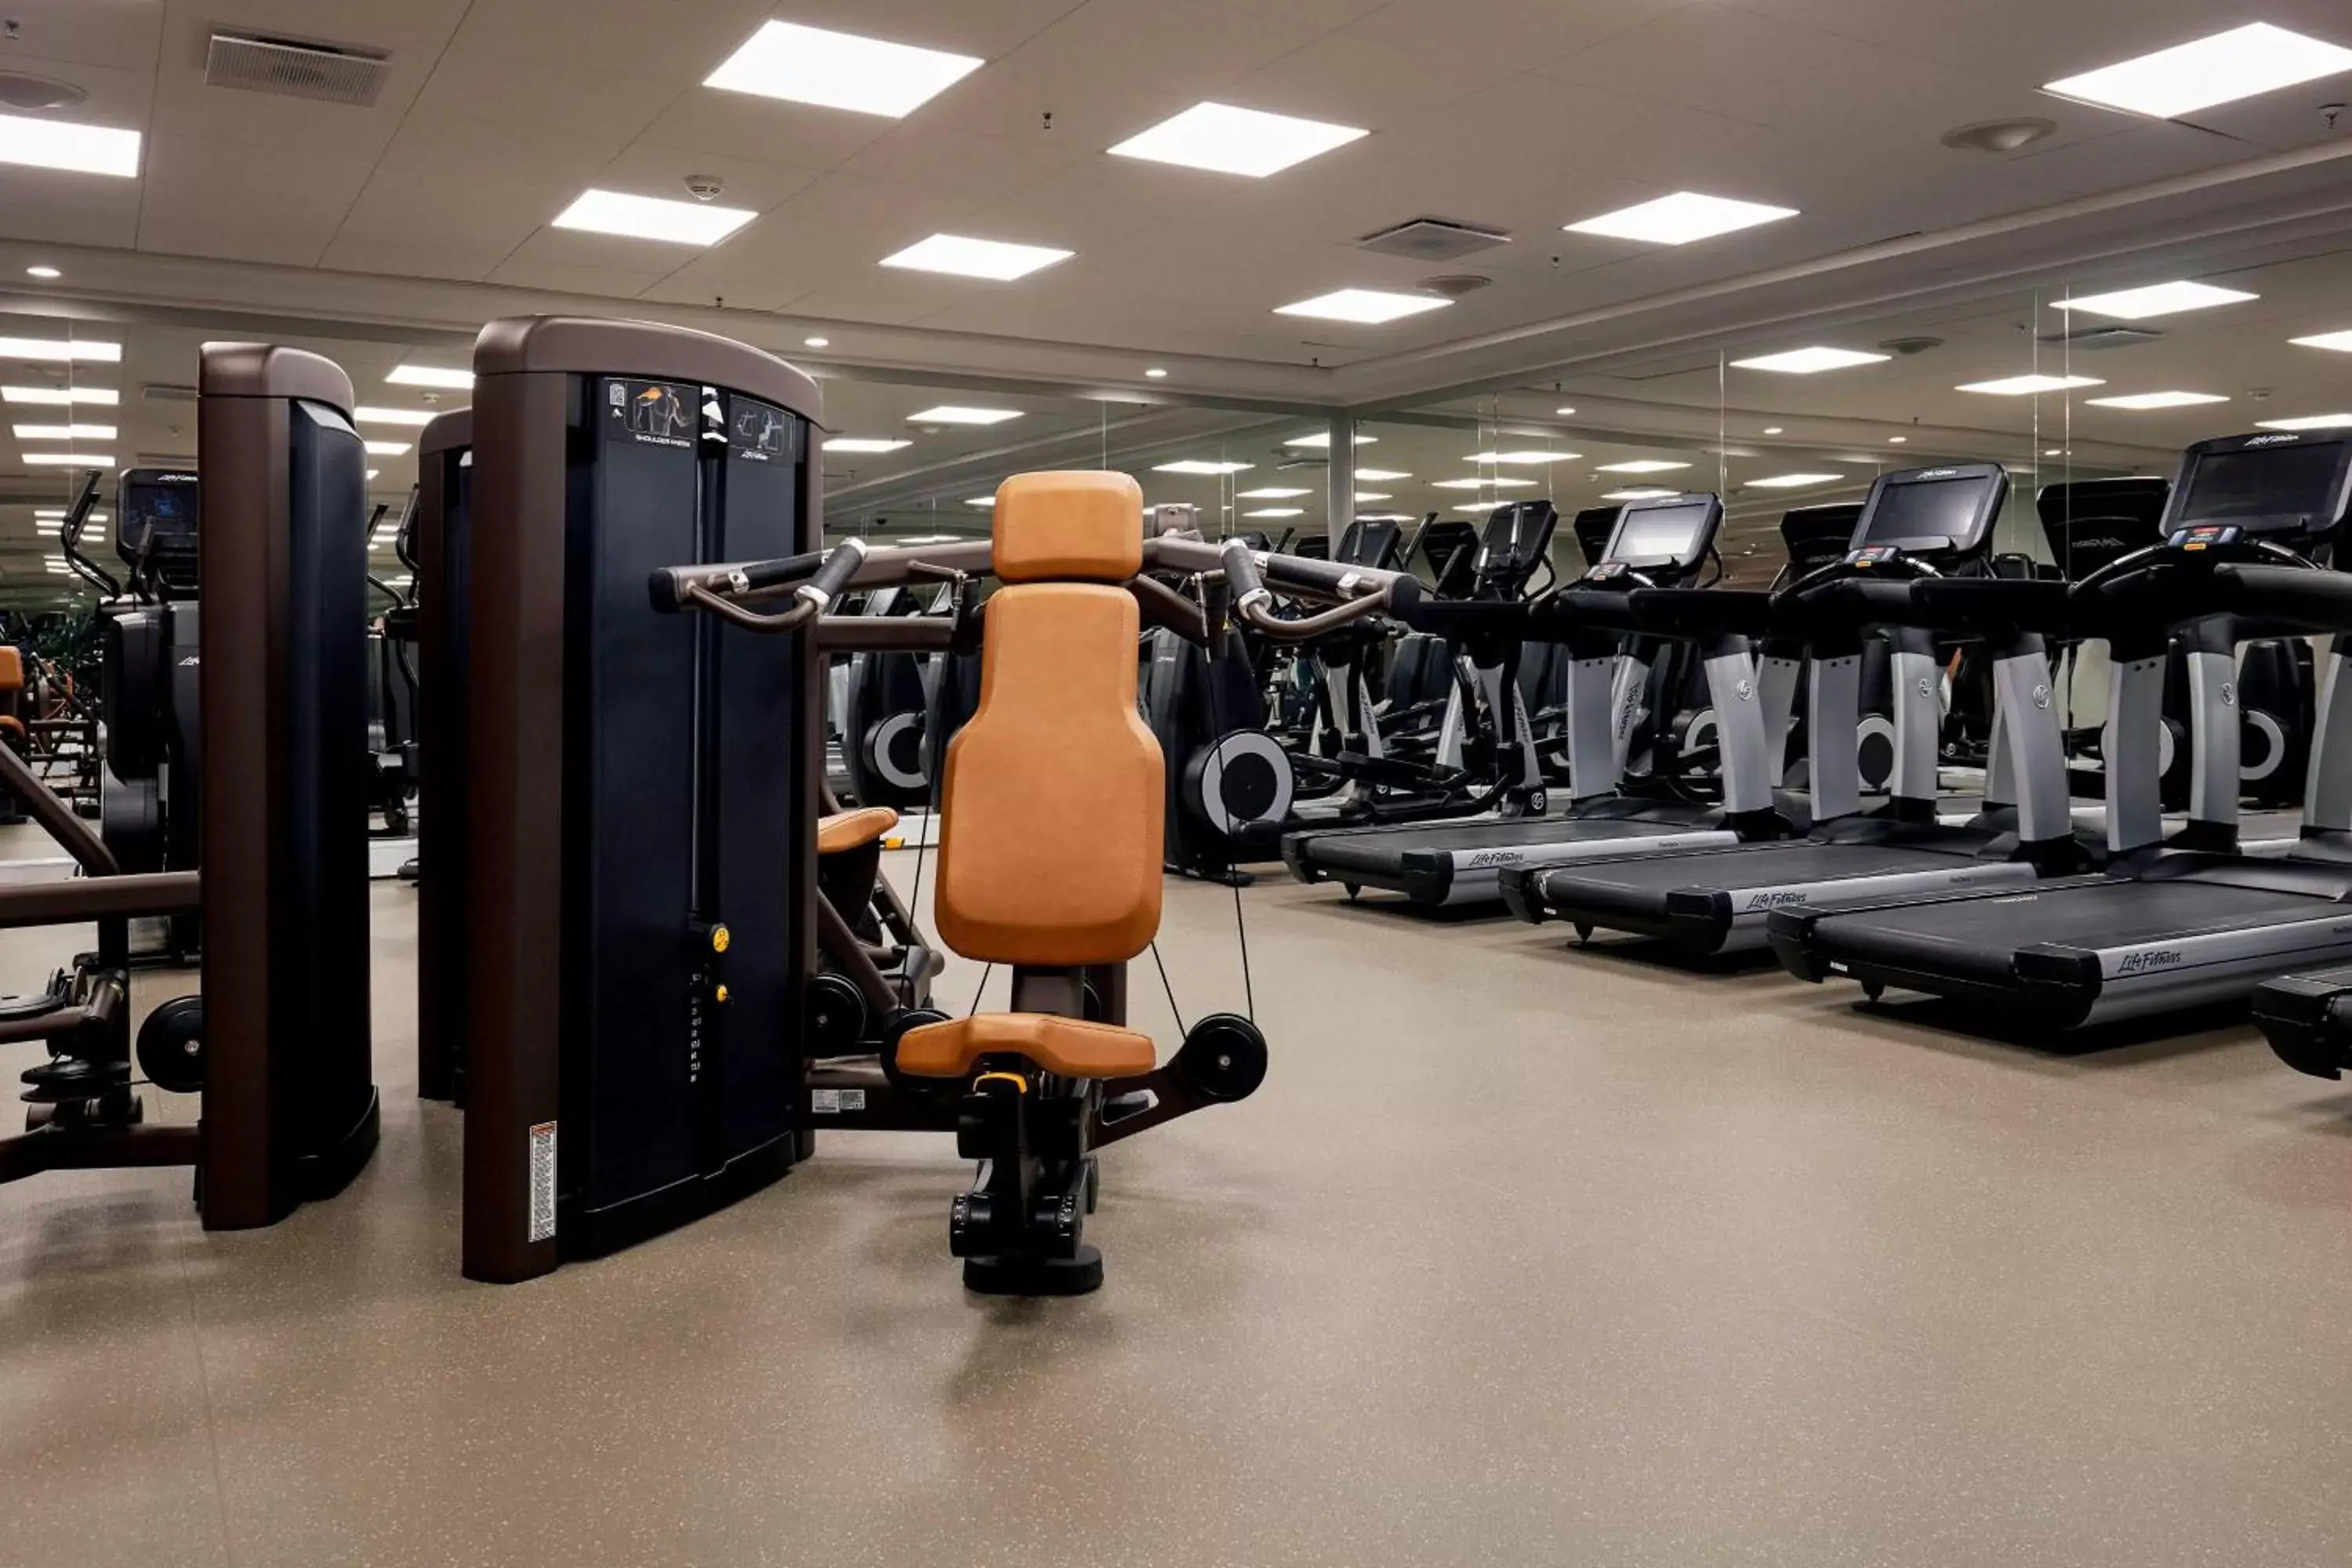 Fitness centre/facilities, Fitness Center/Facilities in Copenhagen Marriott Hotel